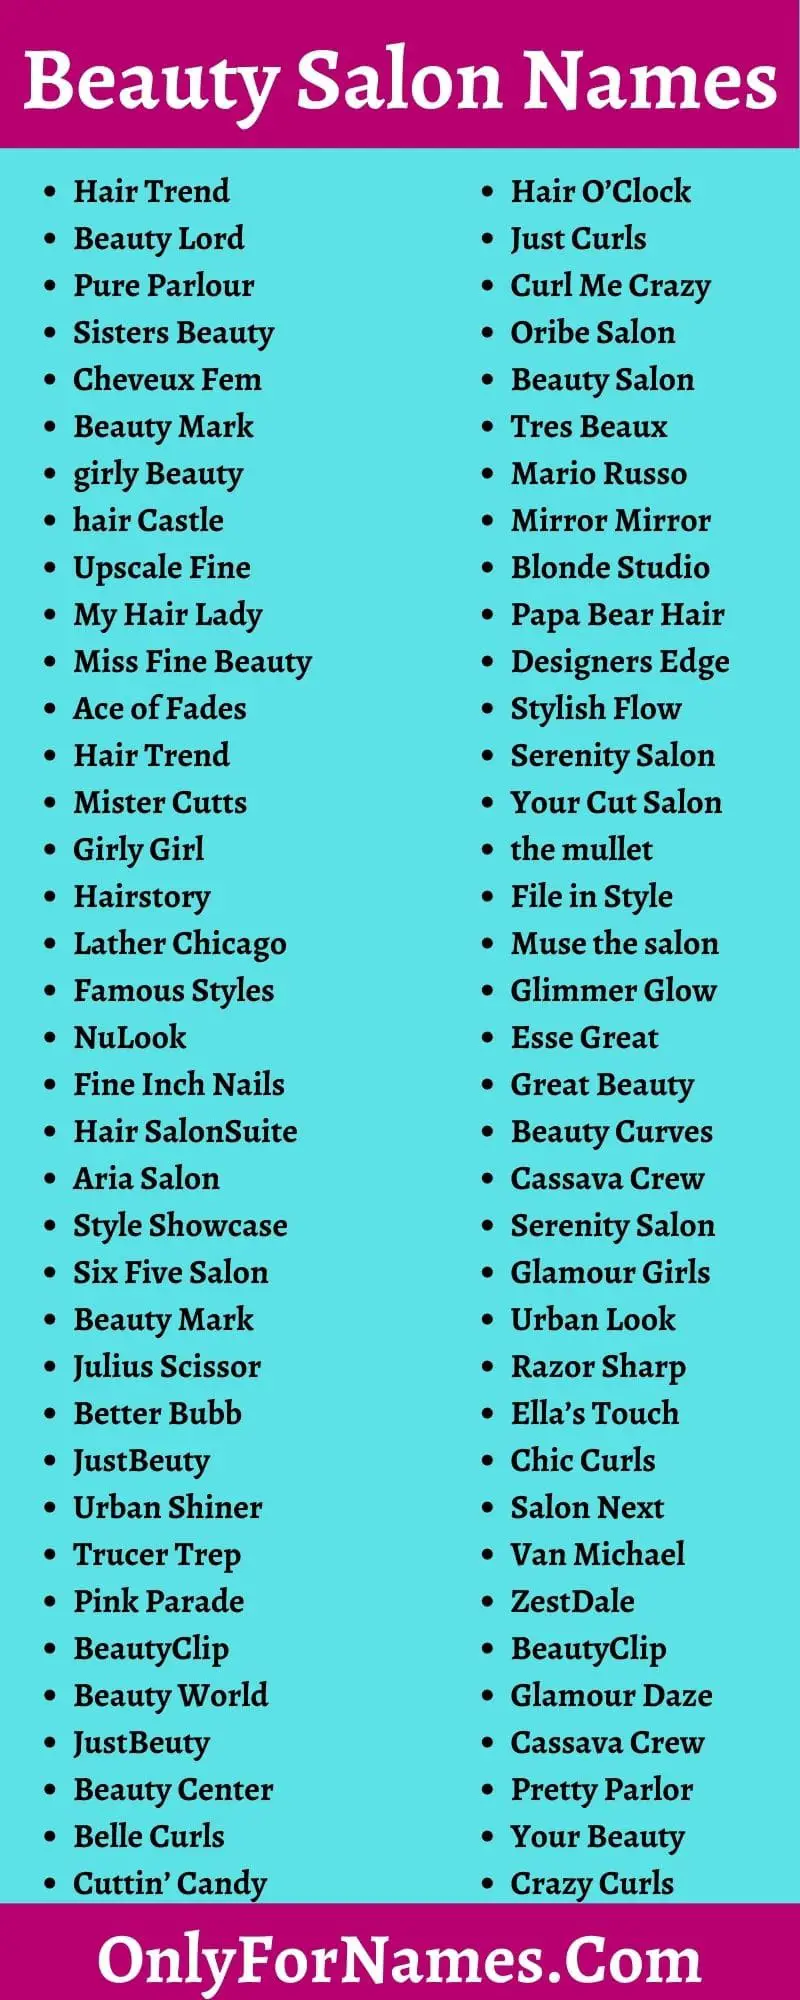 Beauty Salon Names